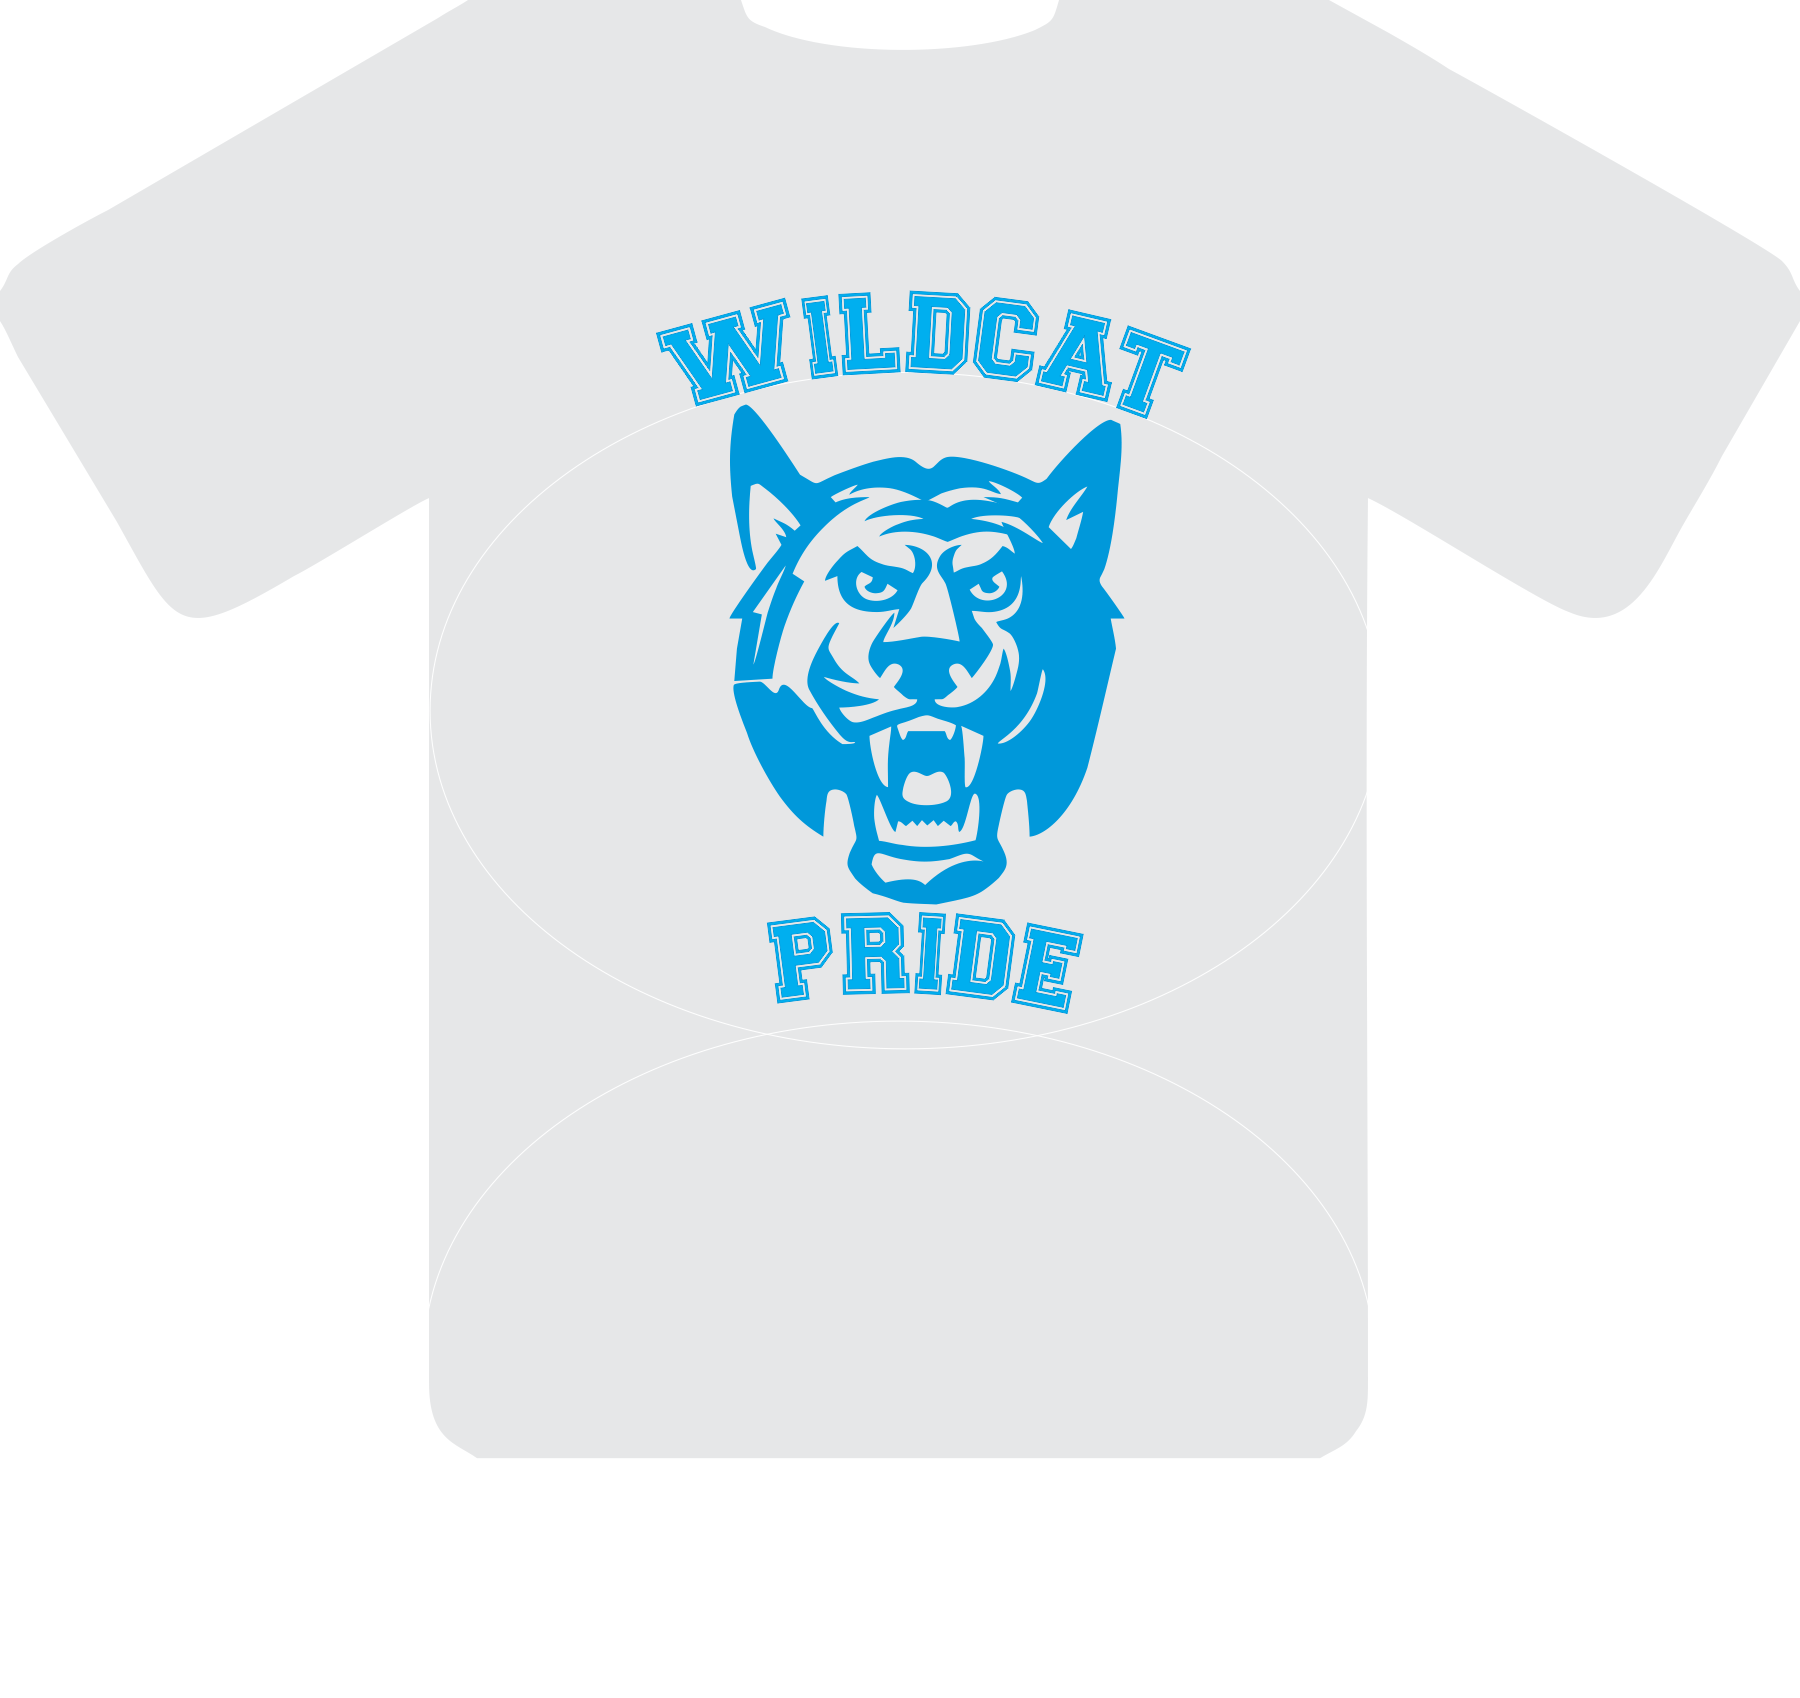 Wildcat Pride - Wilsonville High School (1800x1698), Png Download